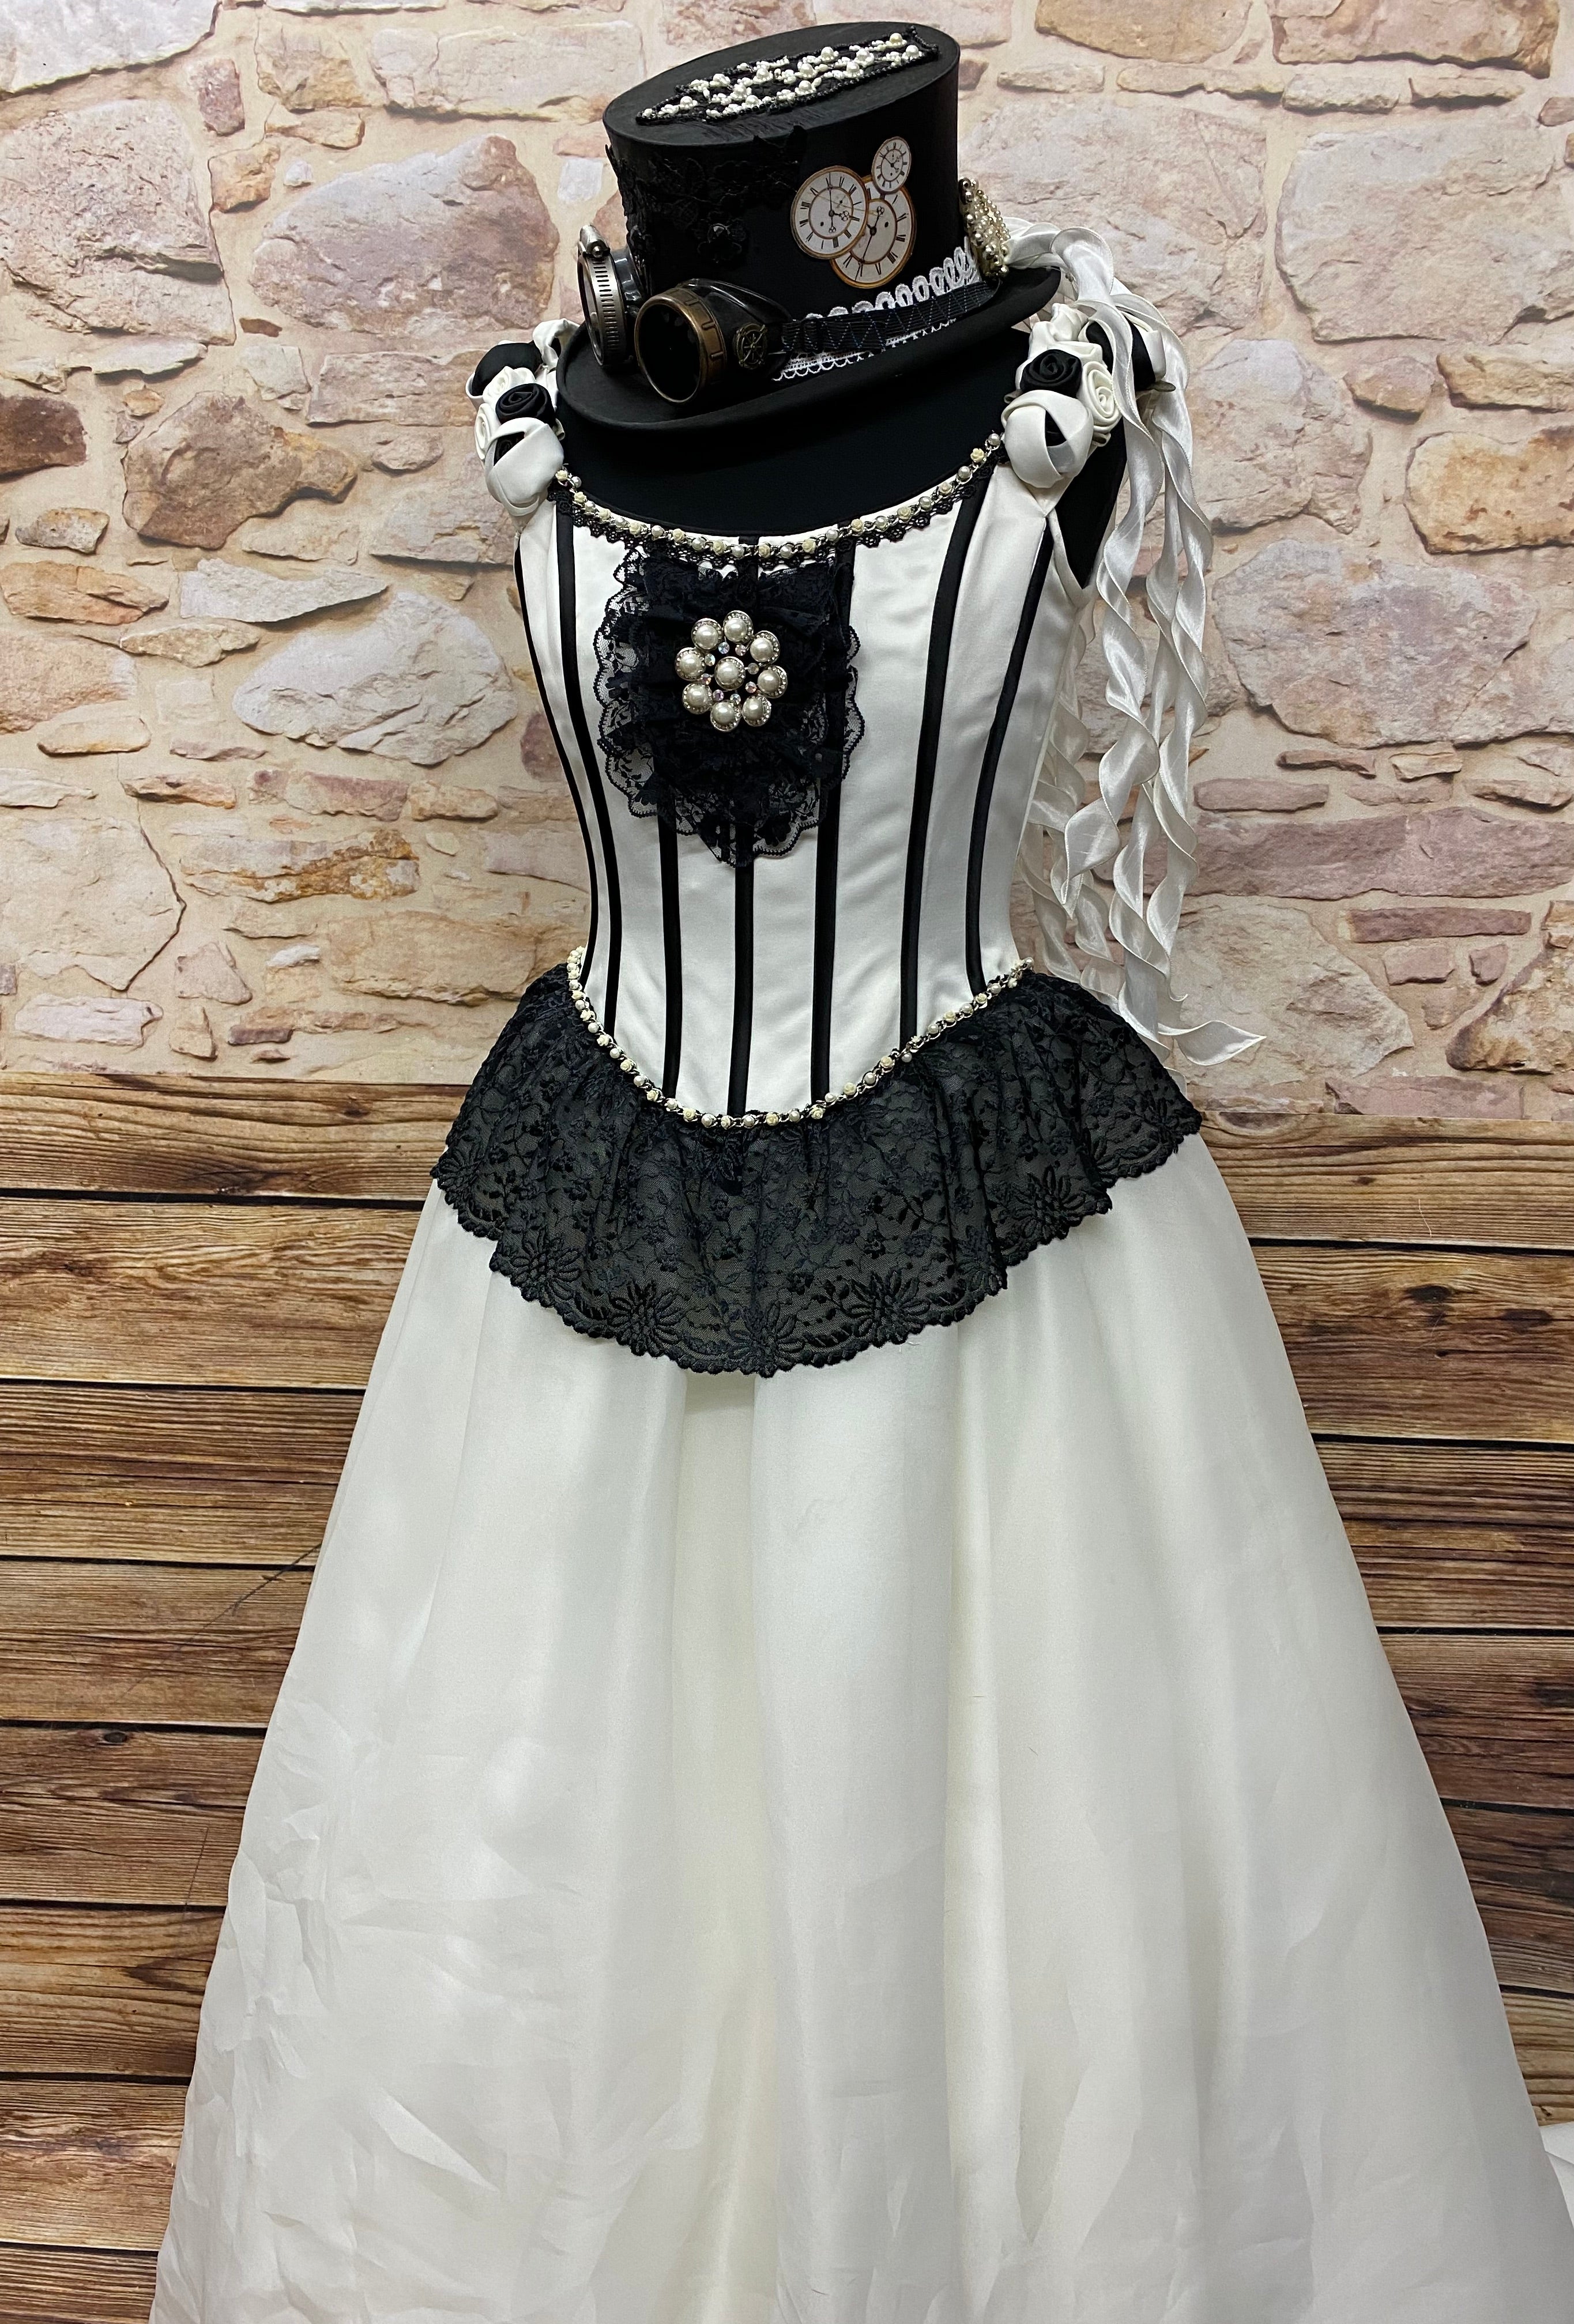 Brautkleid Steampunk Vintage Rokoko Viktorianisch Hochzeitskleid Gr.38 Unikat